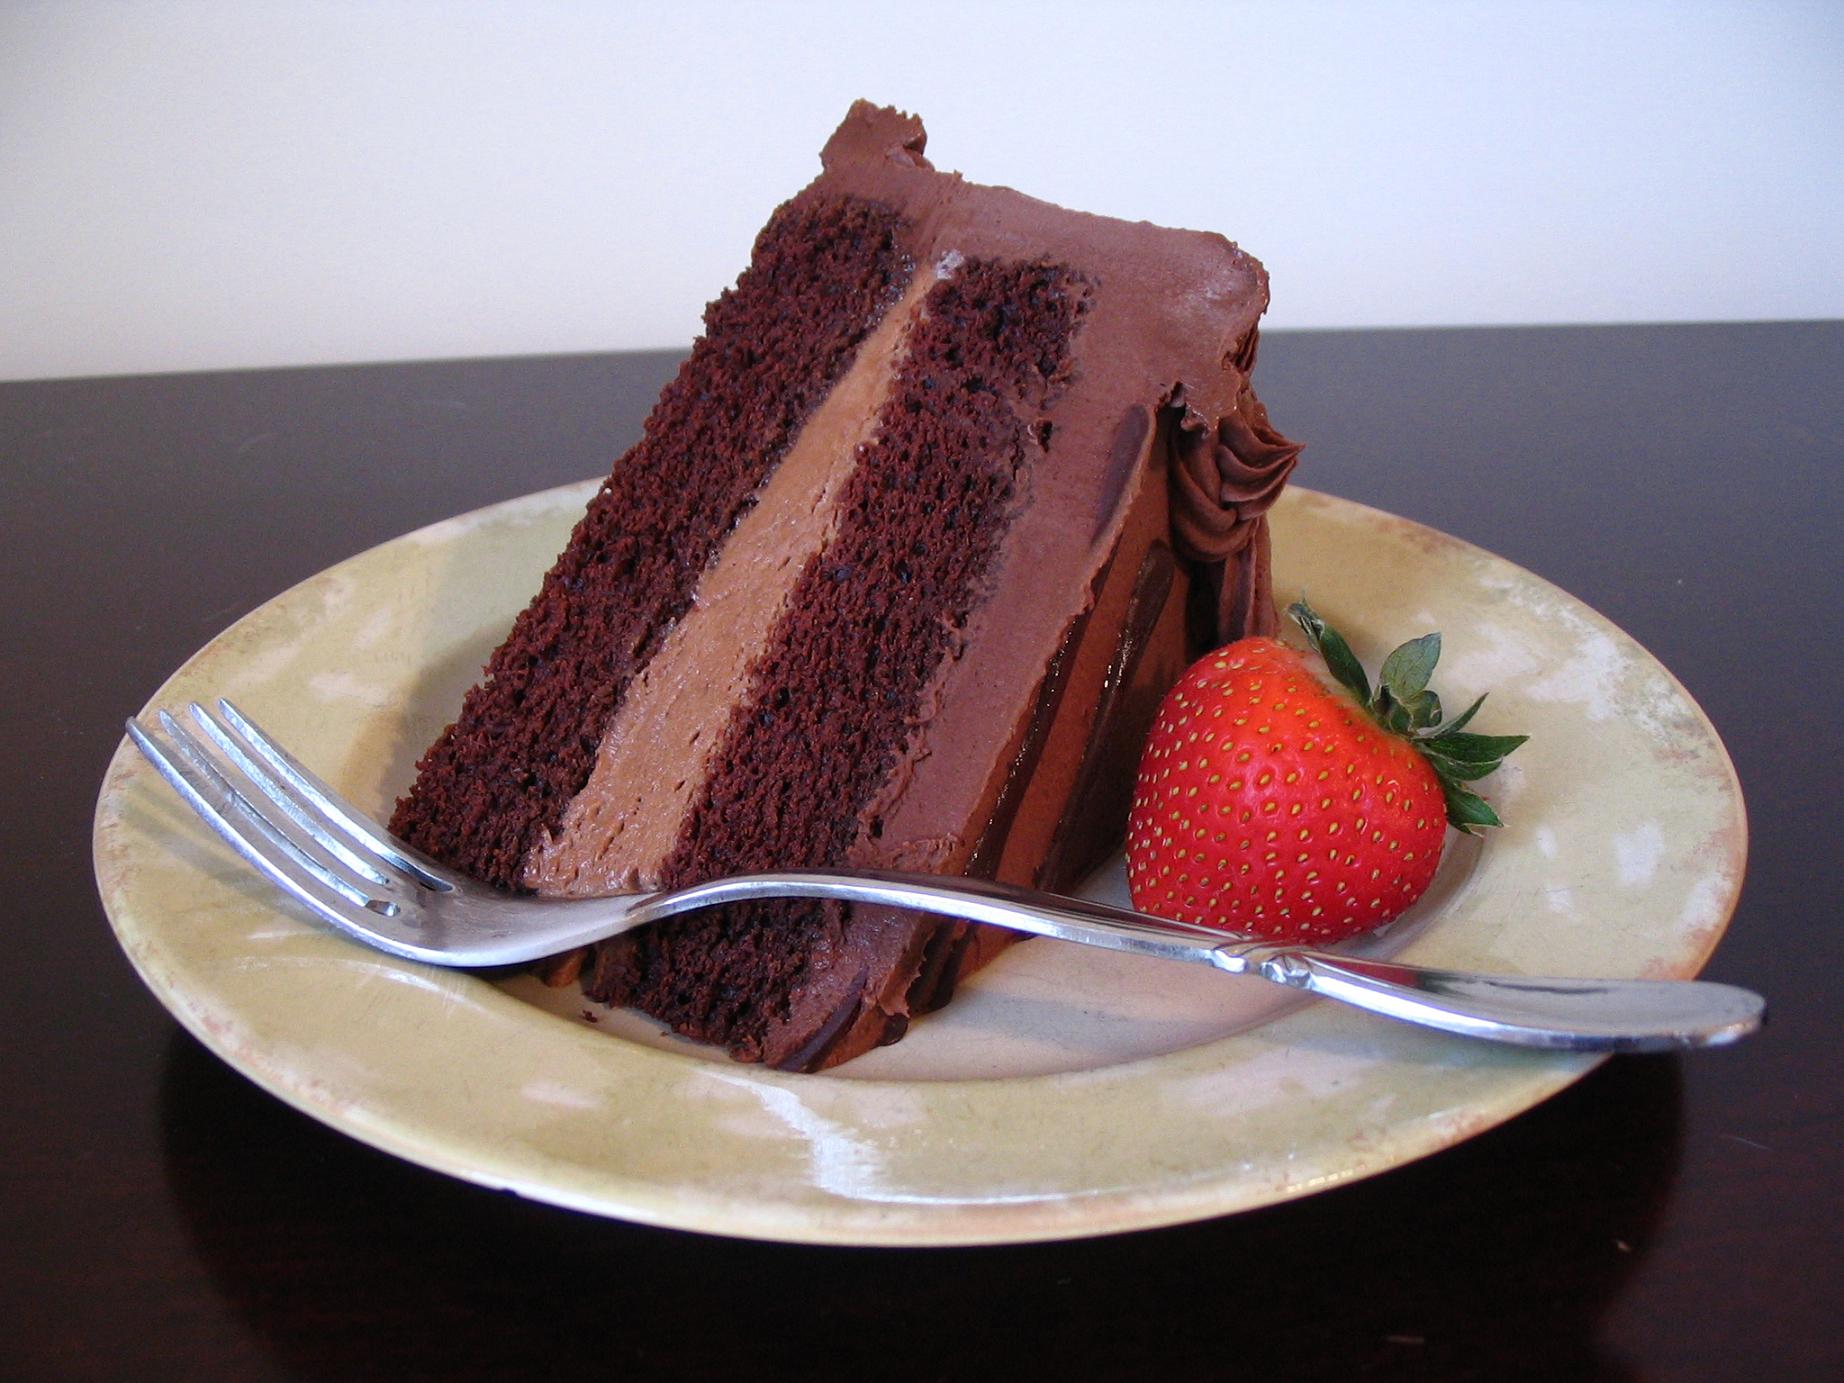 Chocolate-Cake-cakes-34593414-1844-1383.jpg